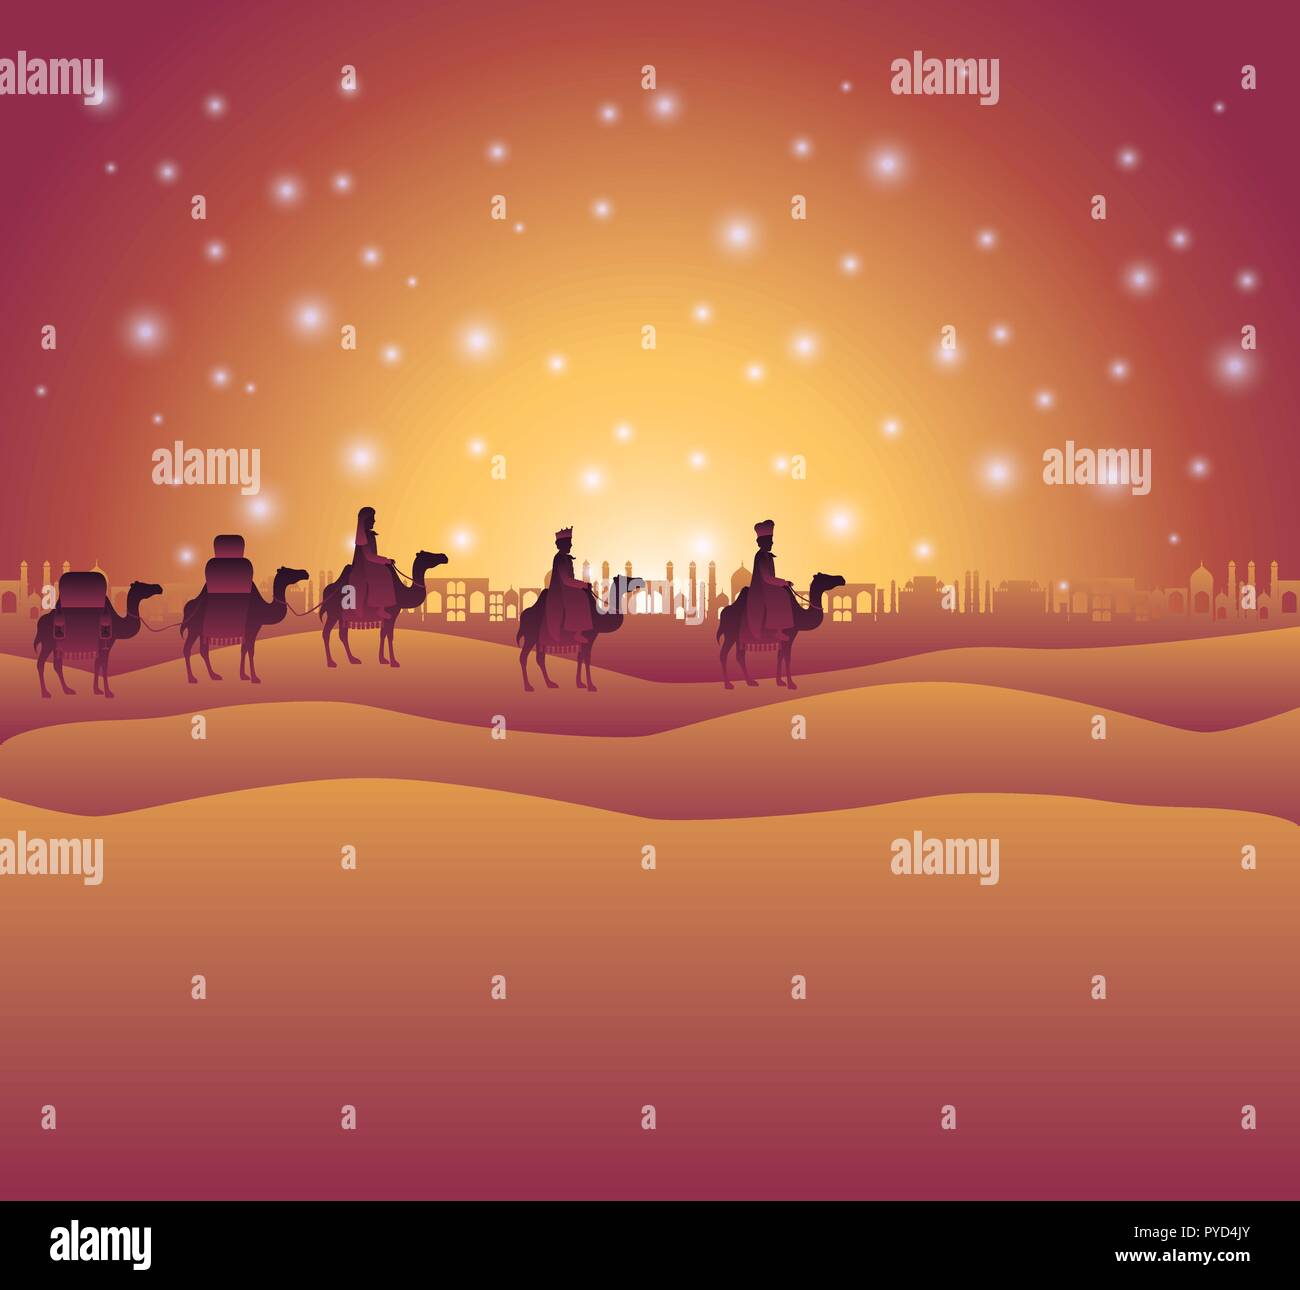 wise men traveling in the desert christmas scene Stock Vector Image